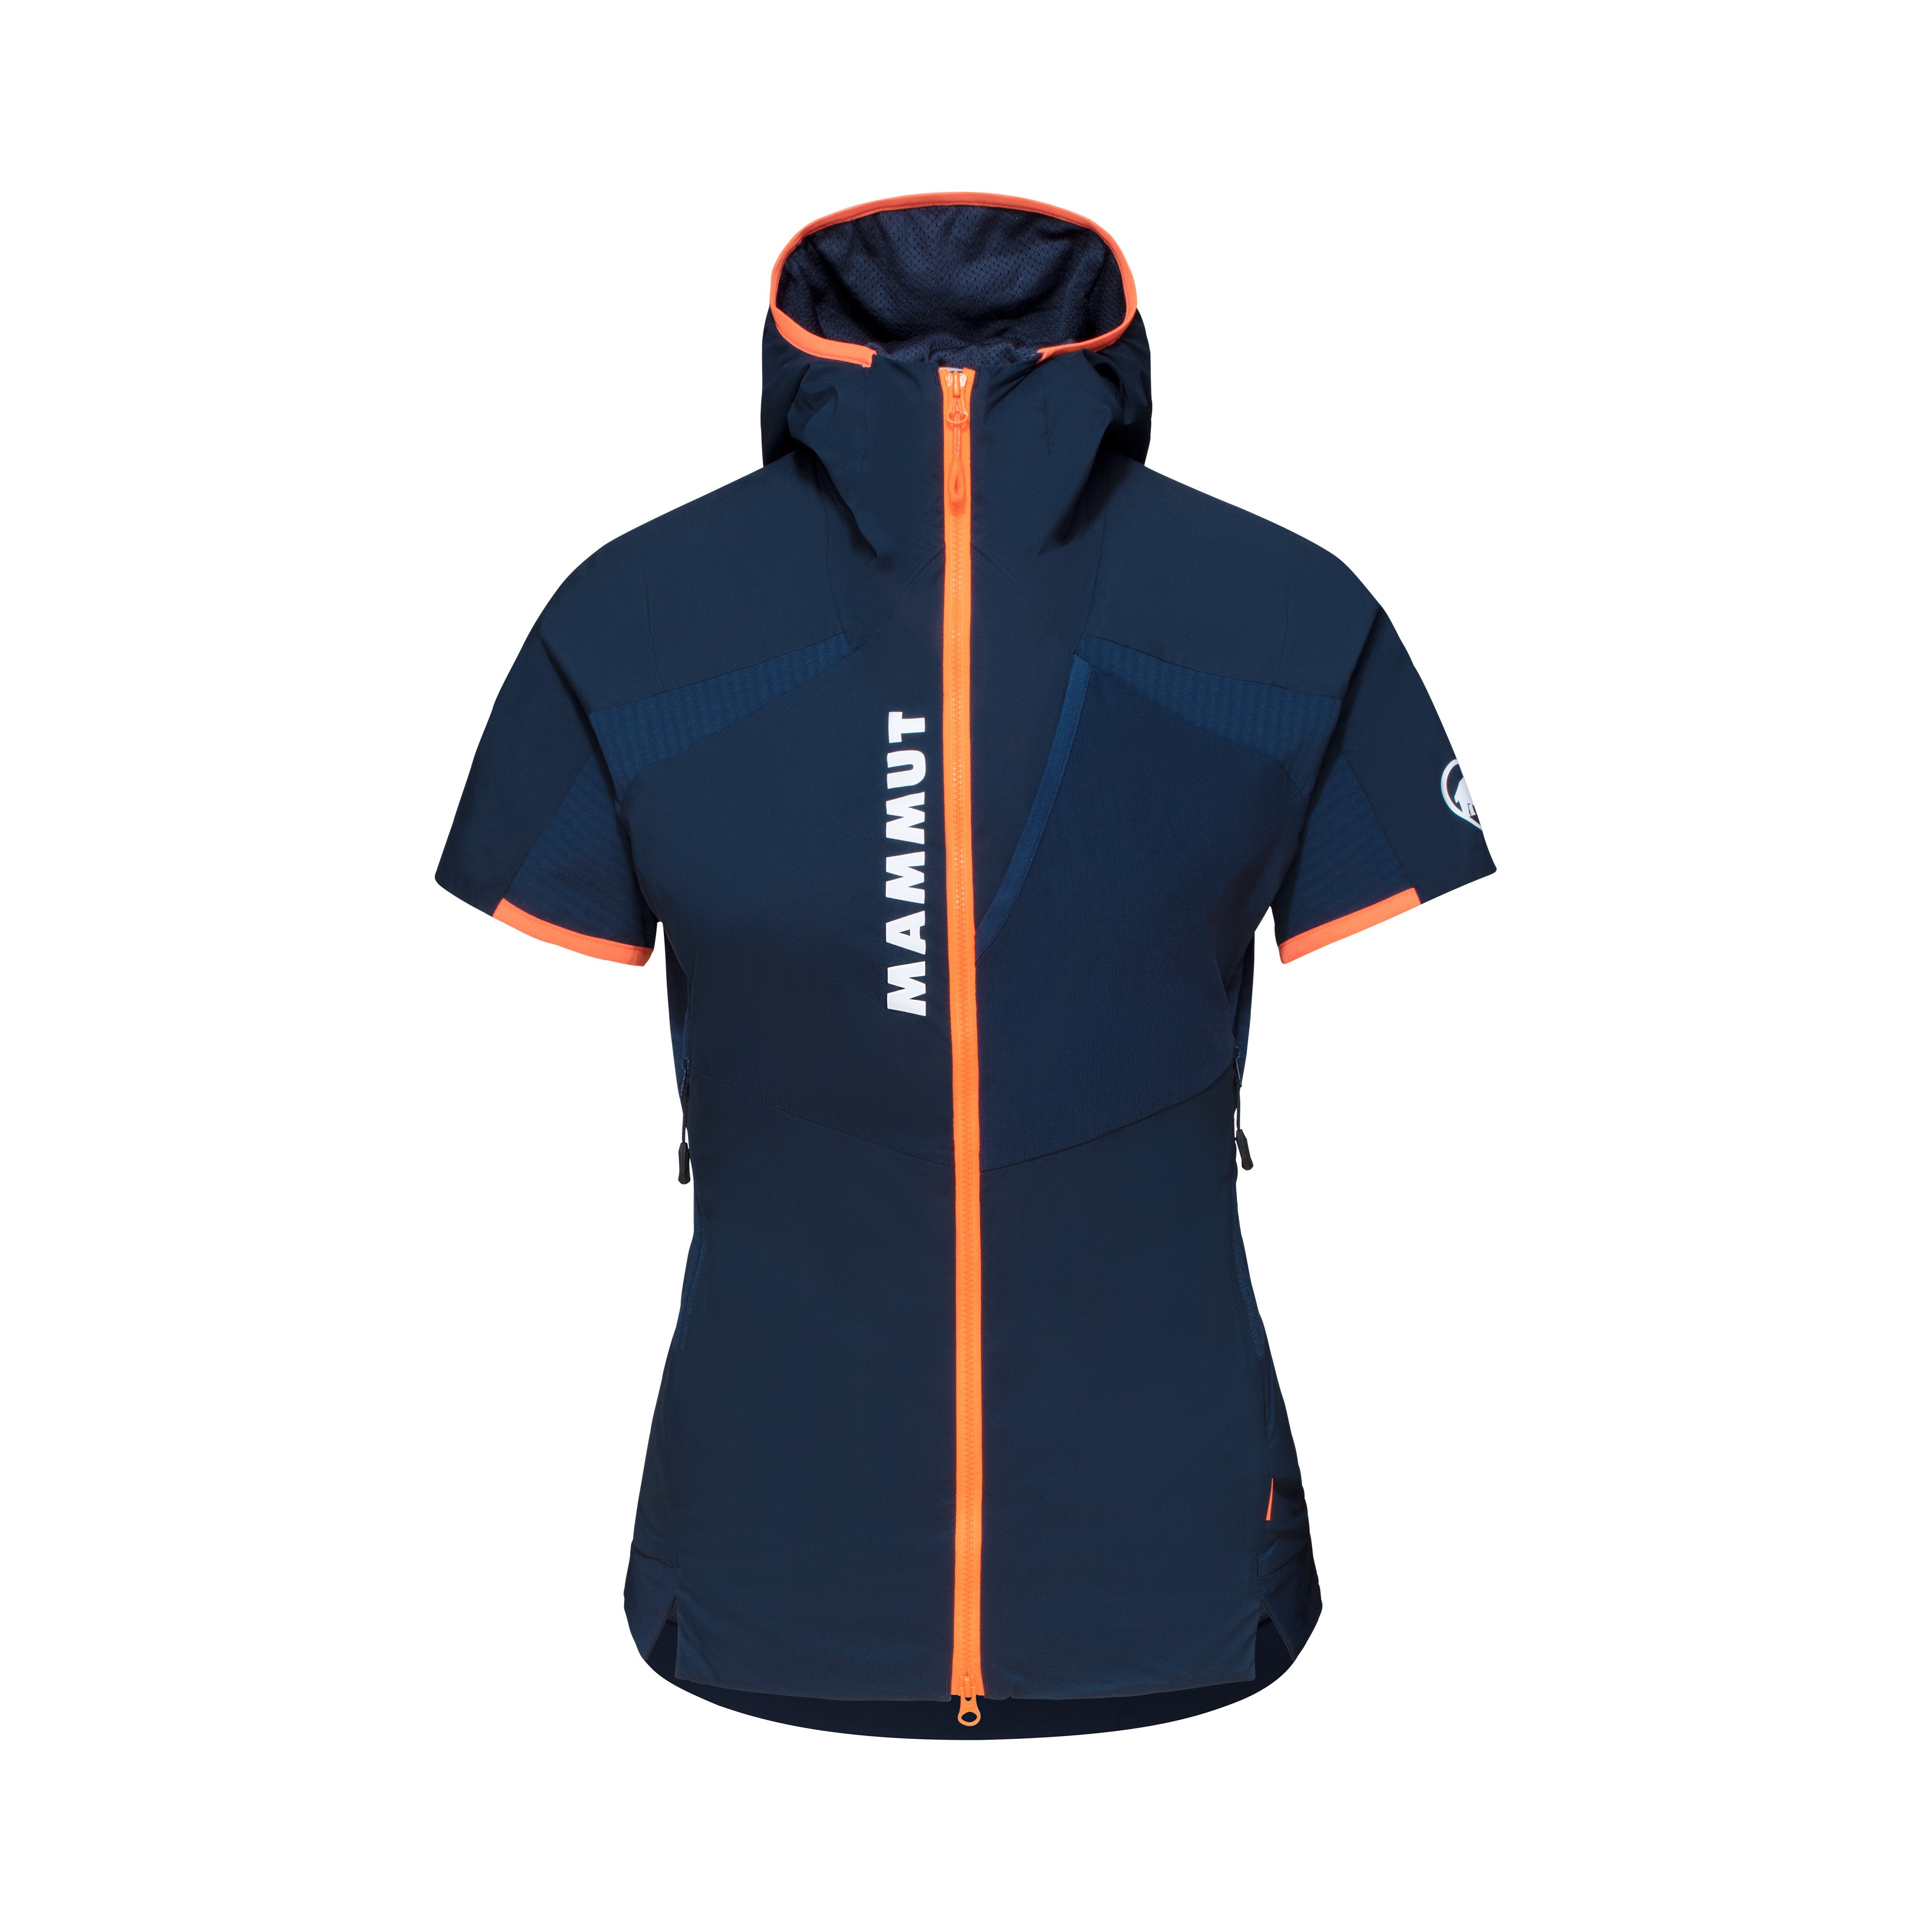 Aenergy IN Hybrid Hooded Vest Women - marine-vibrant orange, XS thumbnail